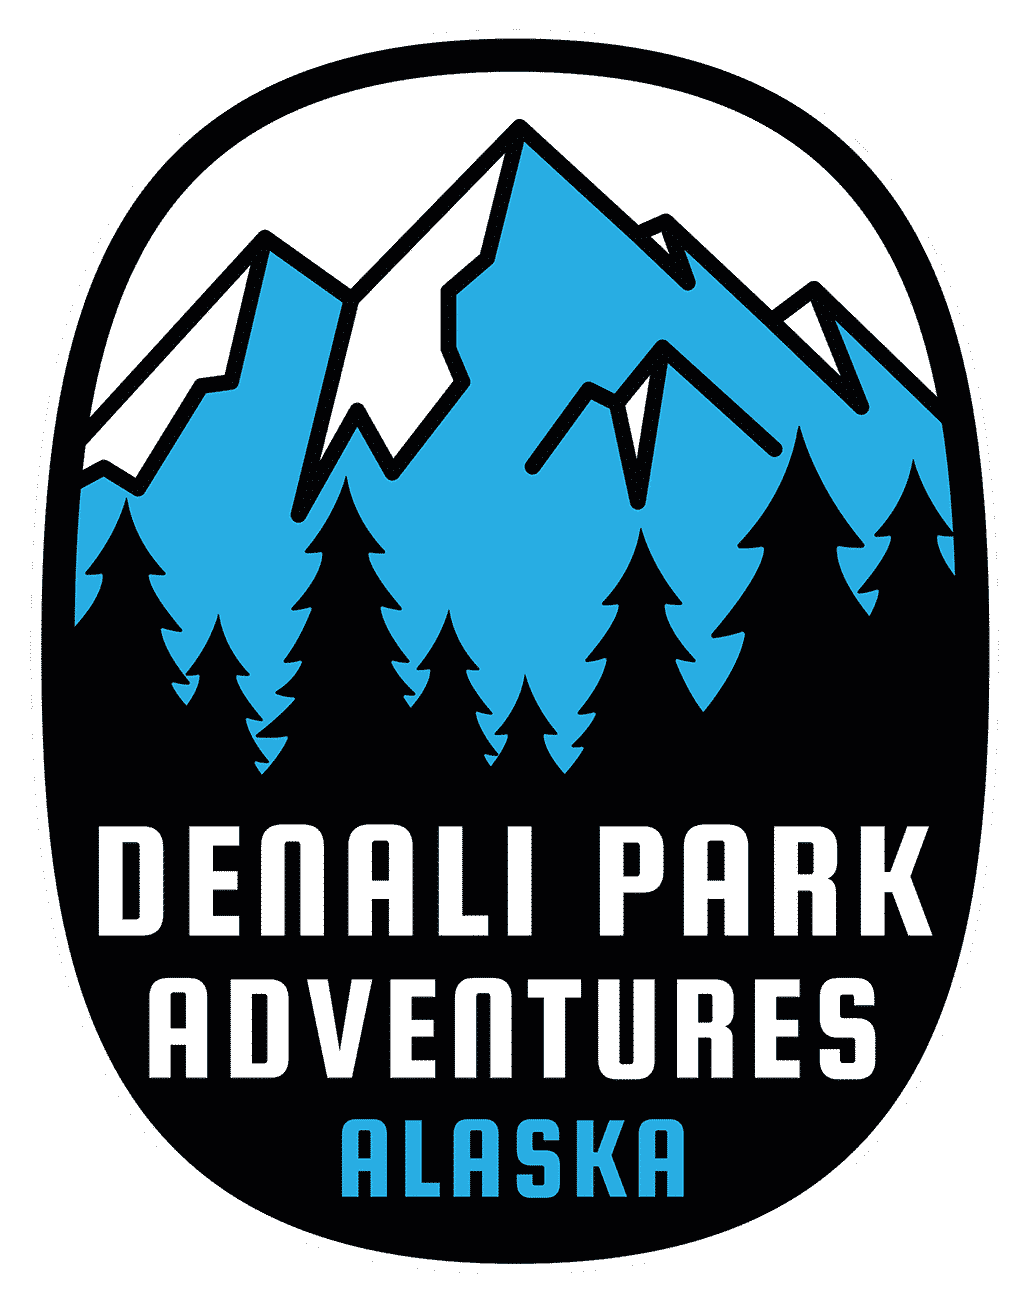 Denali Photos - Pictures and Photos of Denali